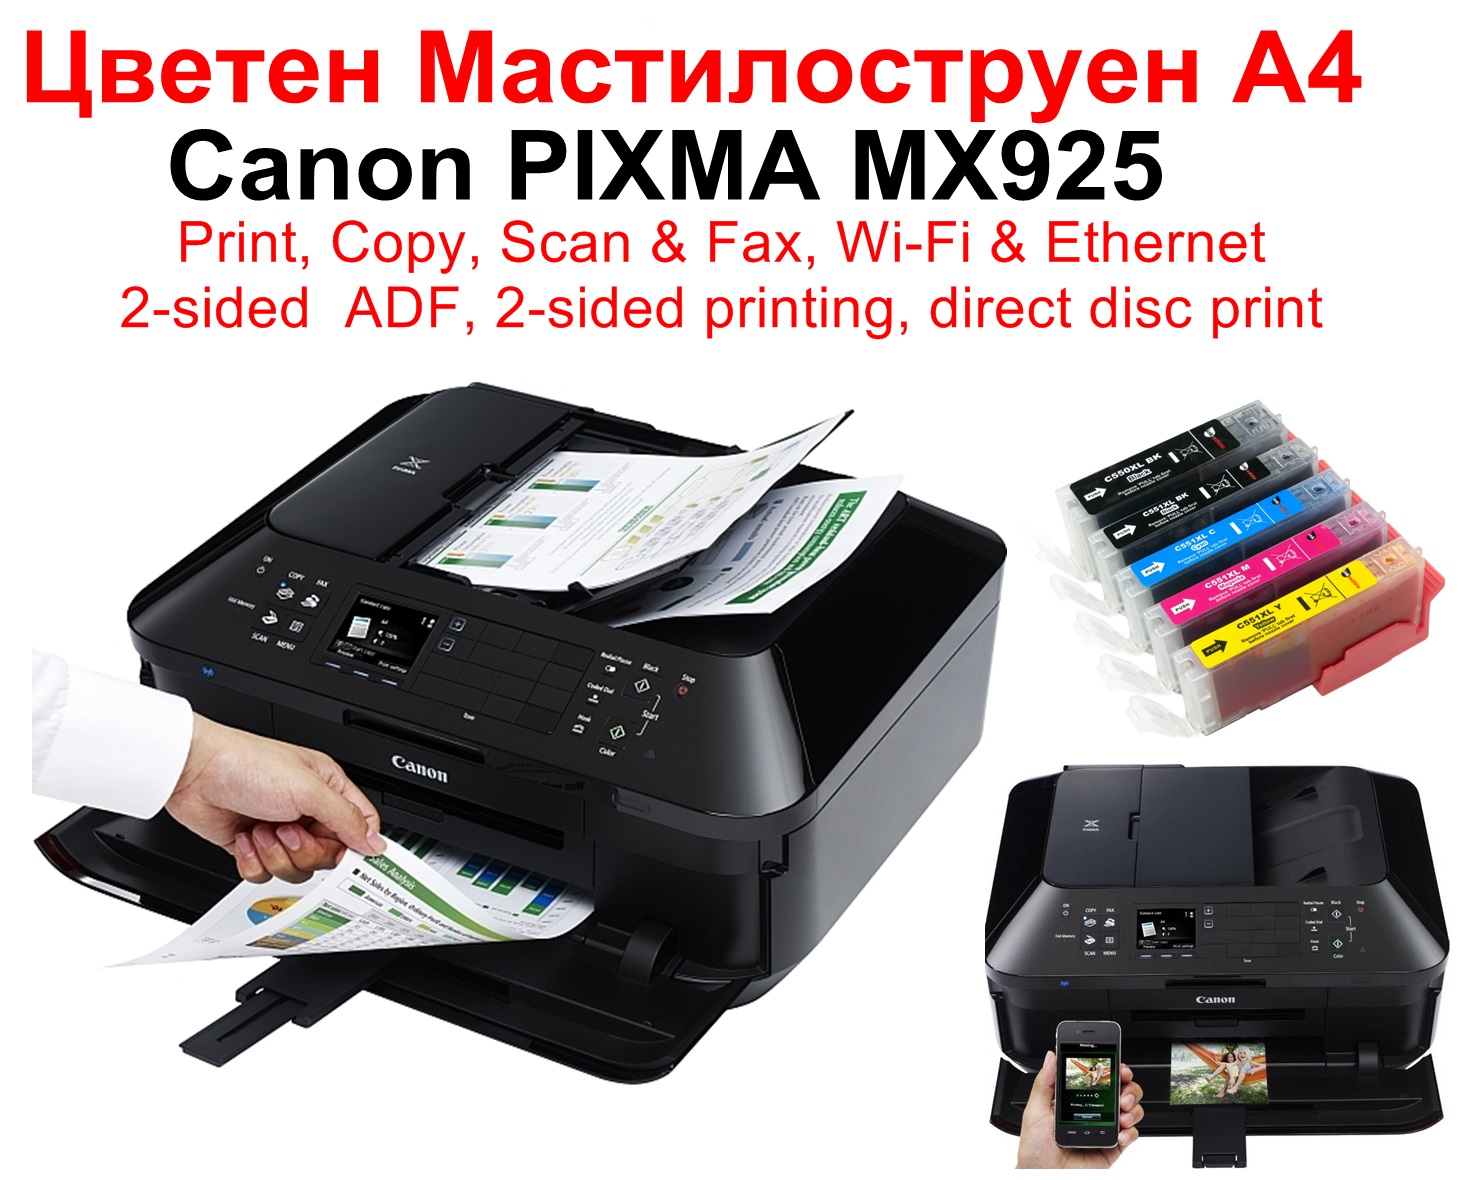 All-in-One Printer Canon PIXMA MX925